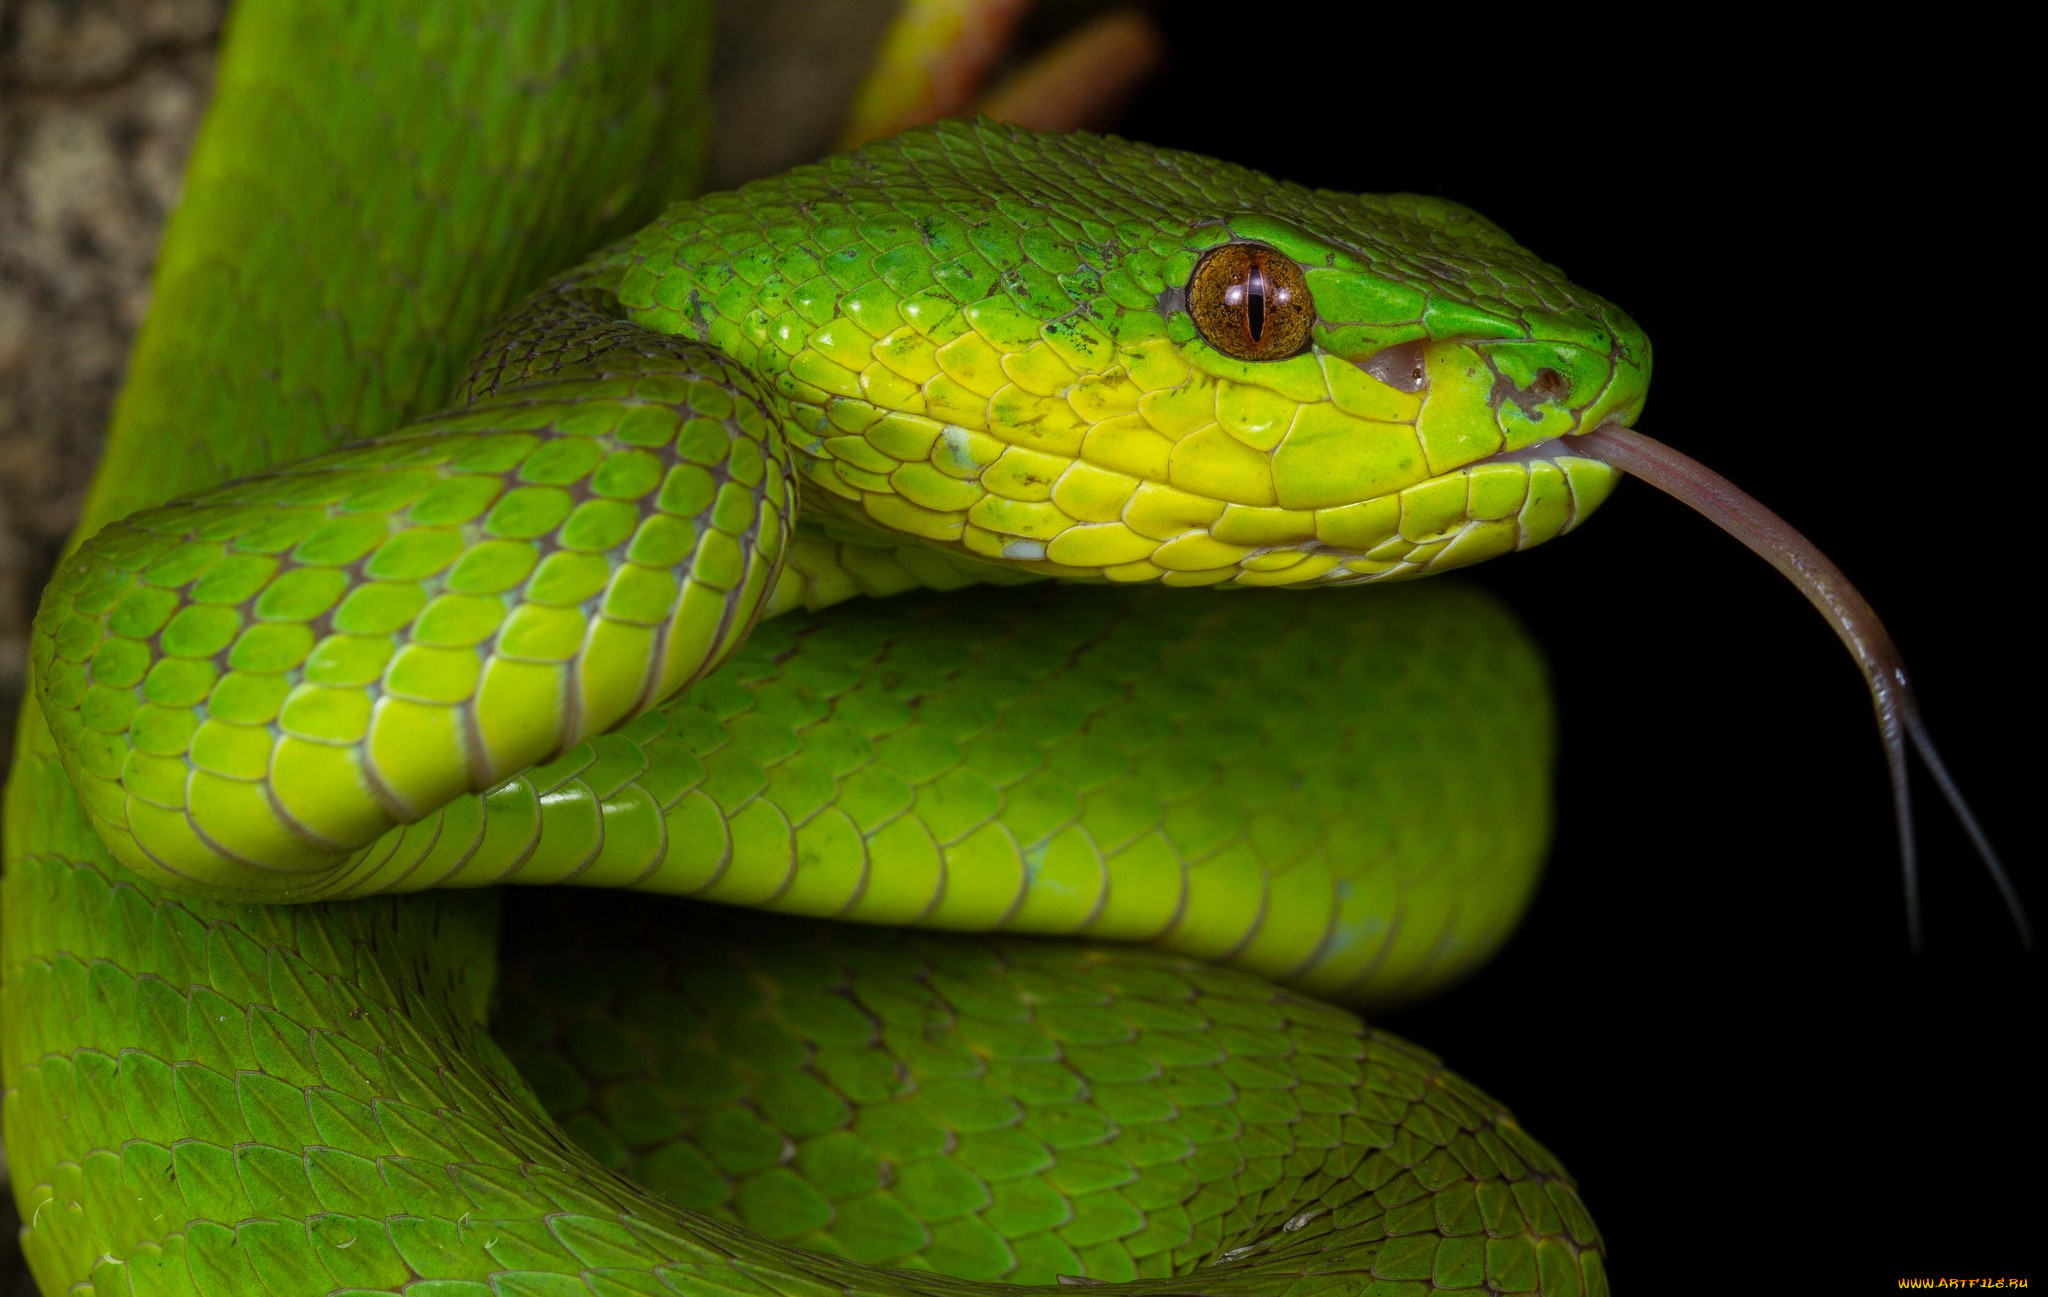 Слушать про змею. Куфия инсулярис. Trimeresurus insularis. Зеленая змея. Желто зеленая змея.